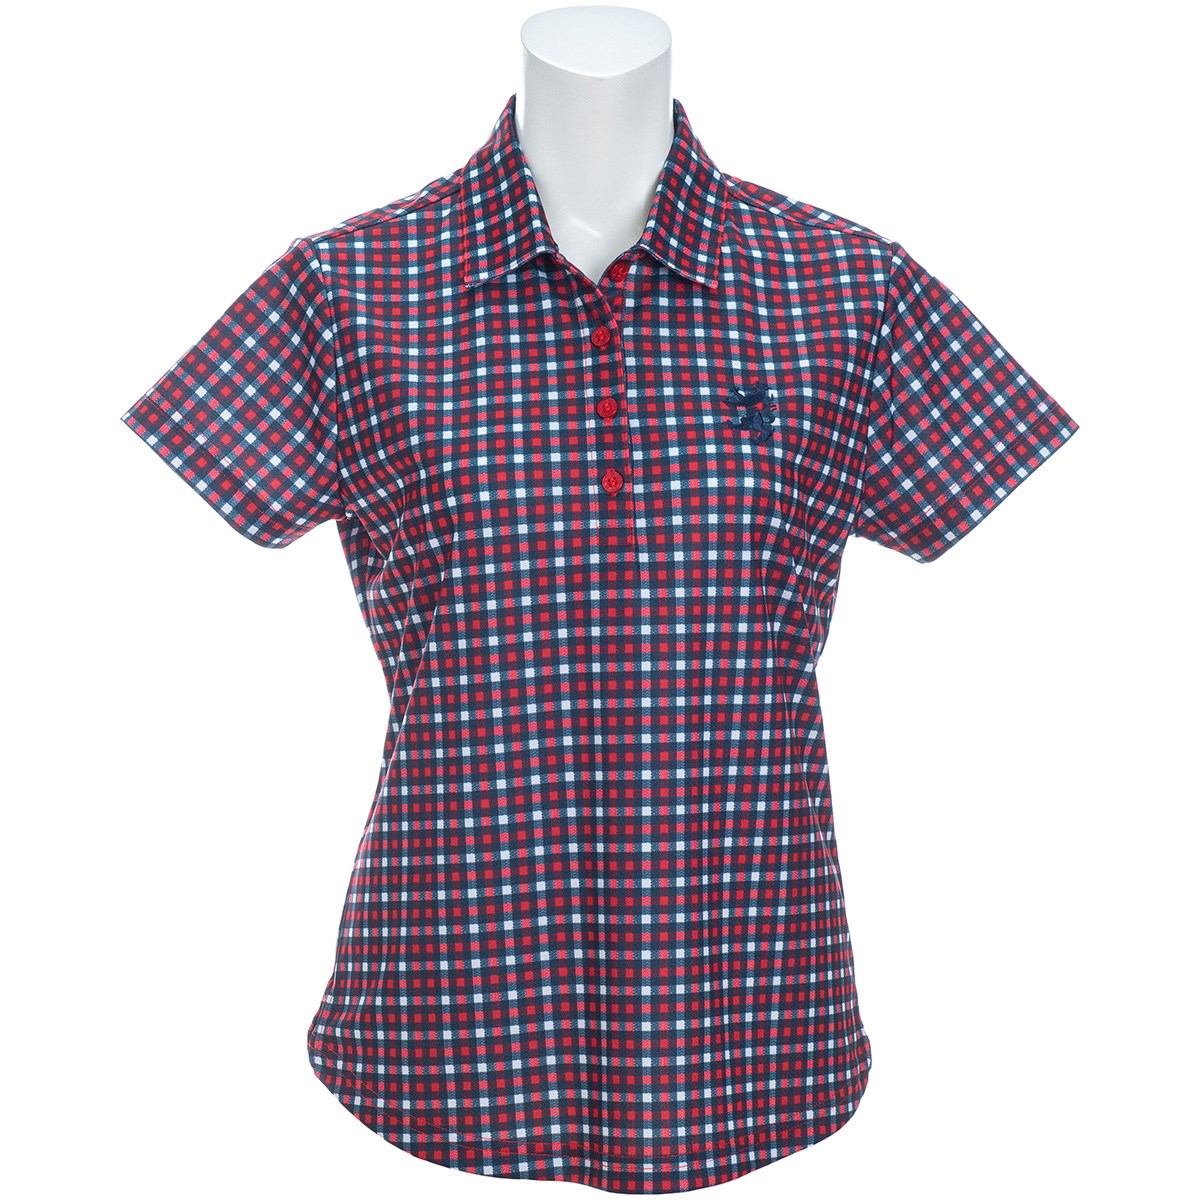 ゴルフウェア ポロシャツ アドミラル レディースの人気商品・通販 